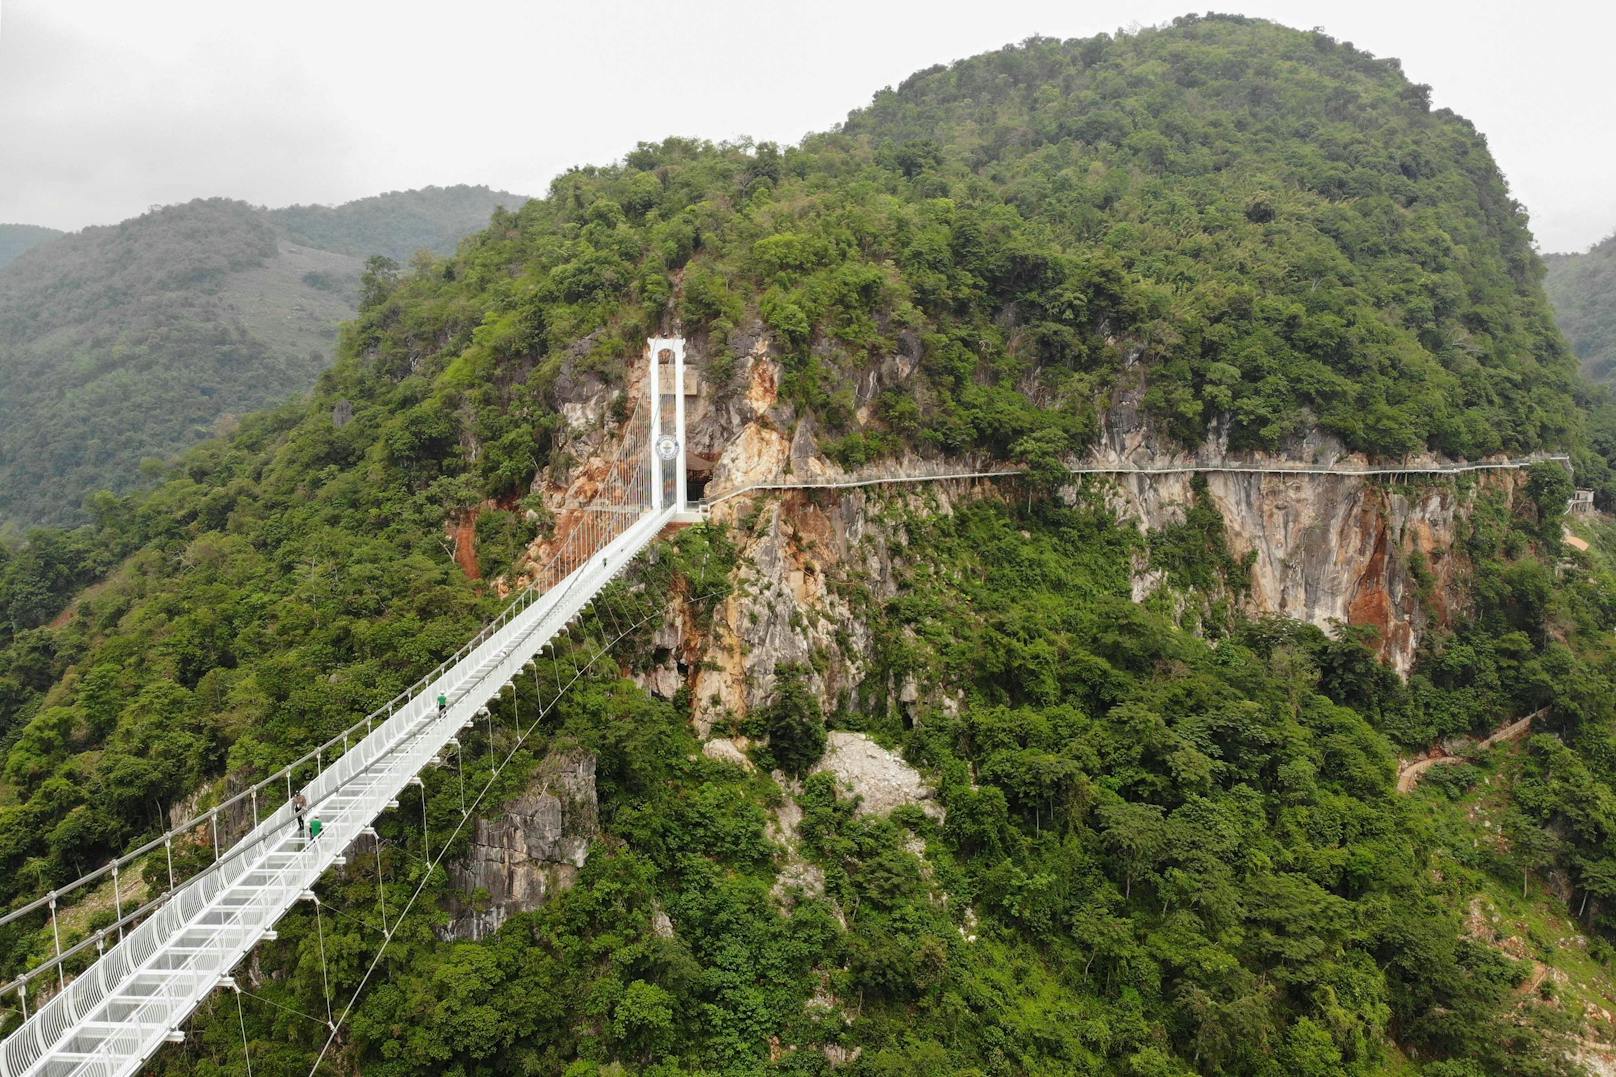 Der "Weiße Drache", wie die Brücke auf deutsch heißt, verläuft übrigens über ein 150 Meter tiefes Tal zwischen zwei Bergen.